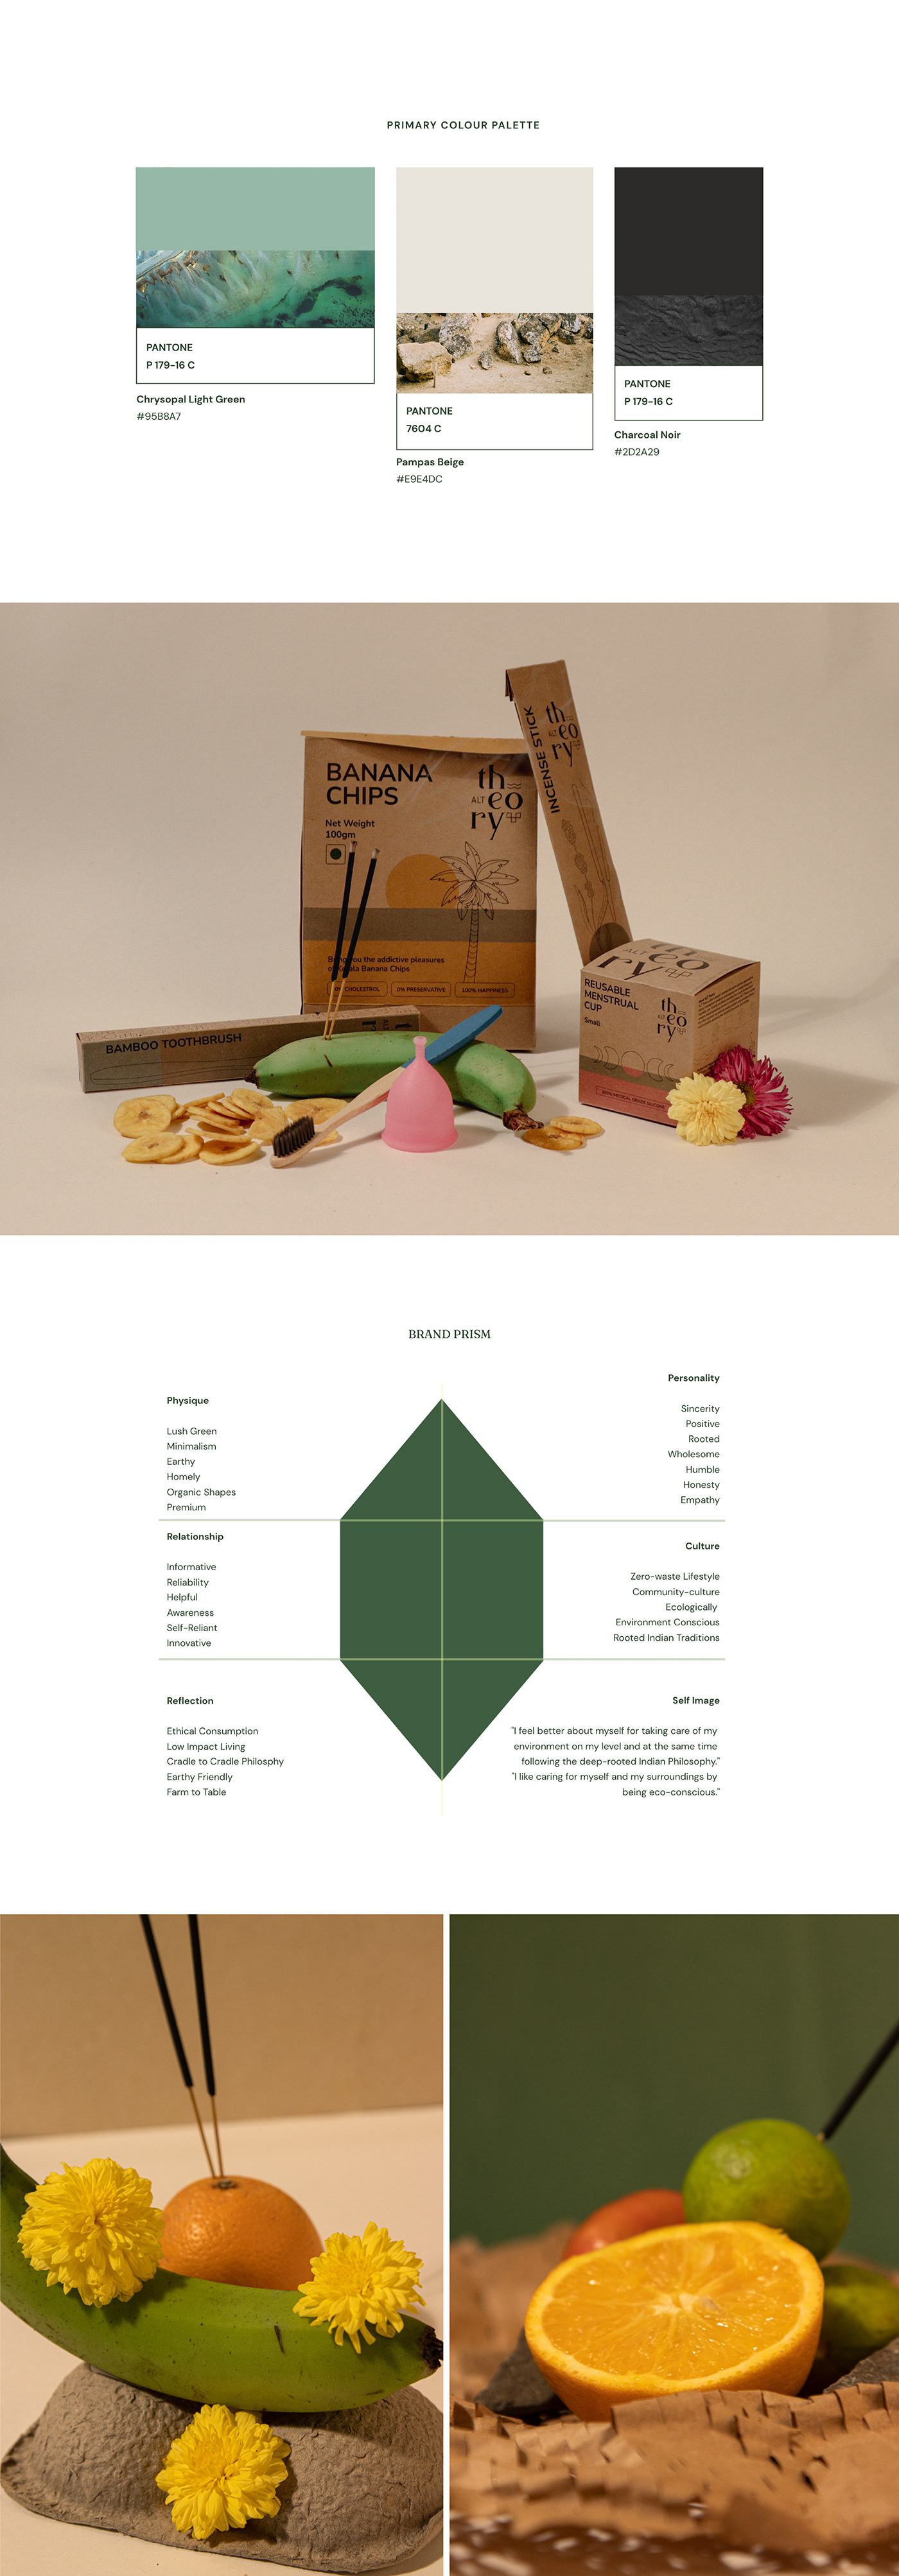 Packaging zero waste Identity Design Sustainability visual identity eco-friendly organic Sustainable Design visual language